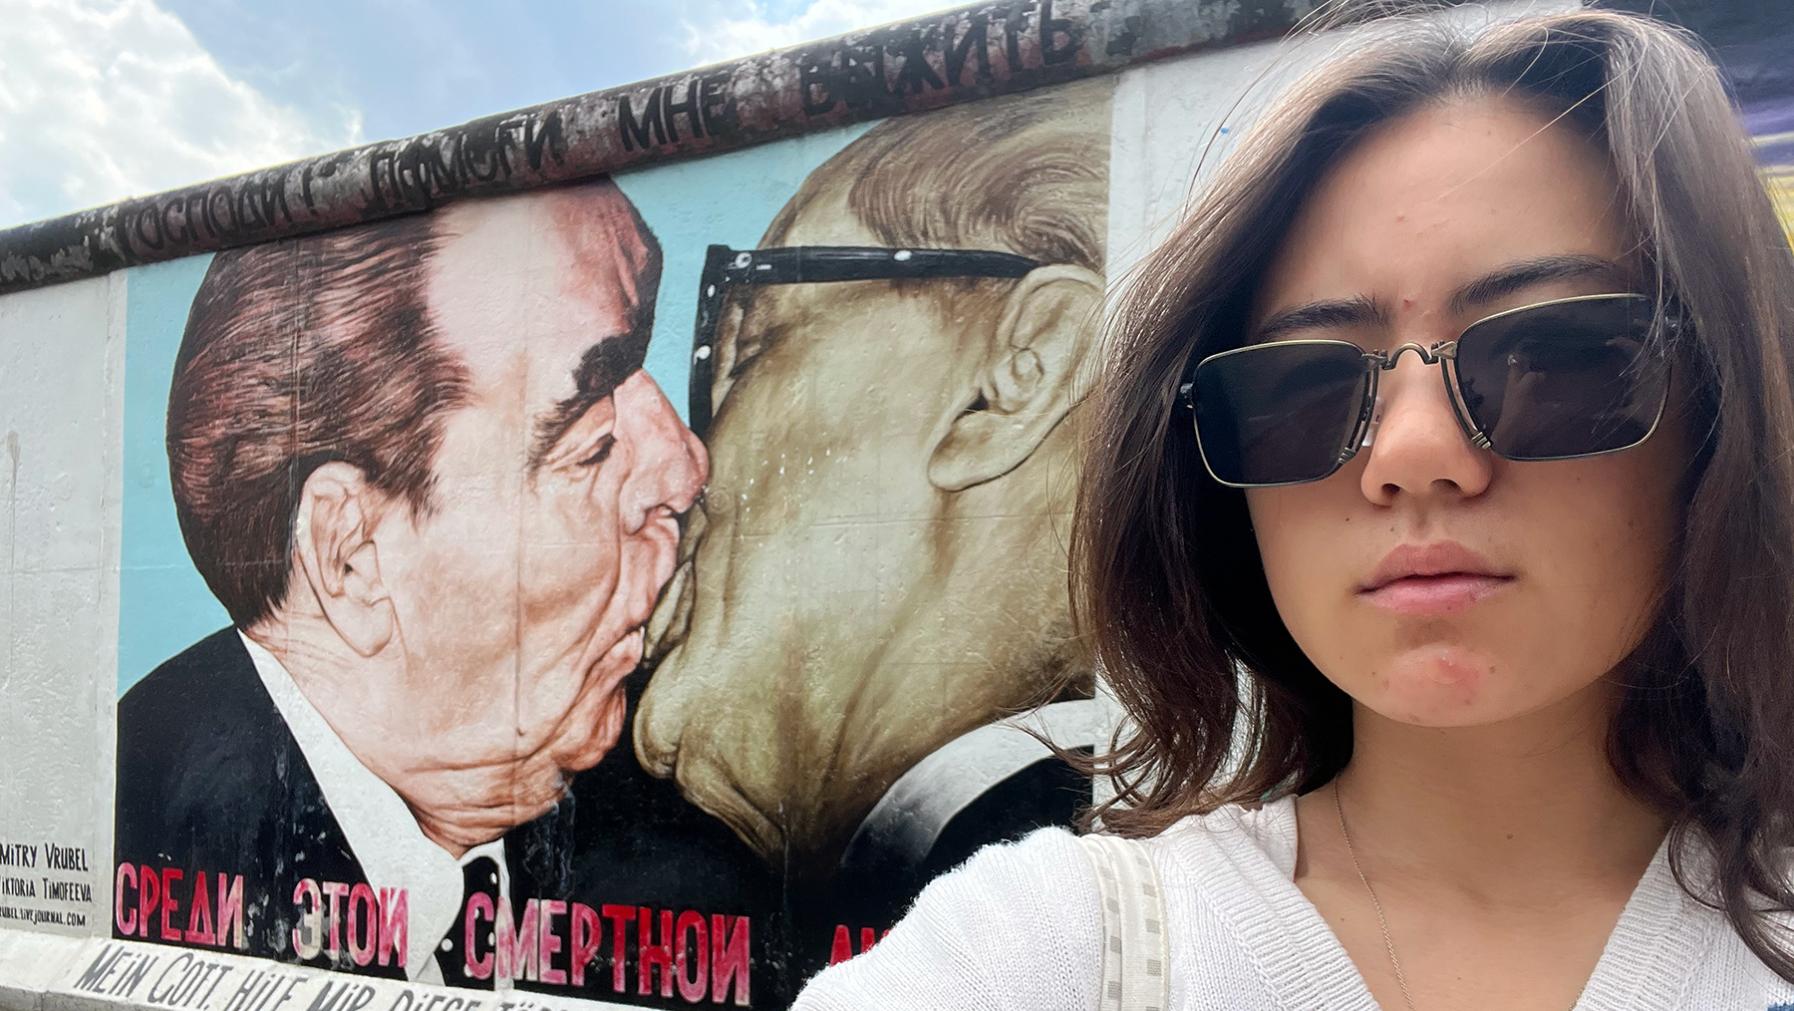 Alexa Chinen at the Berlin Wall